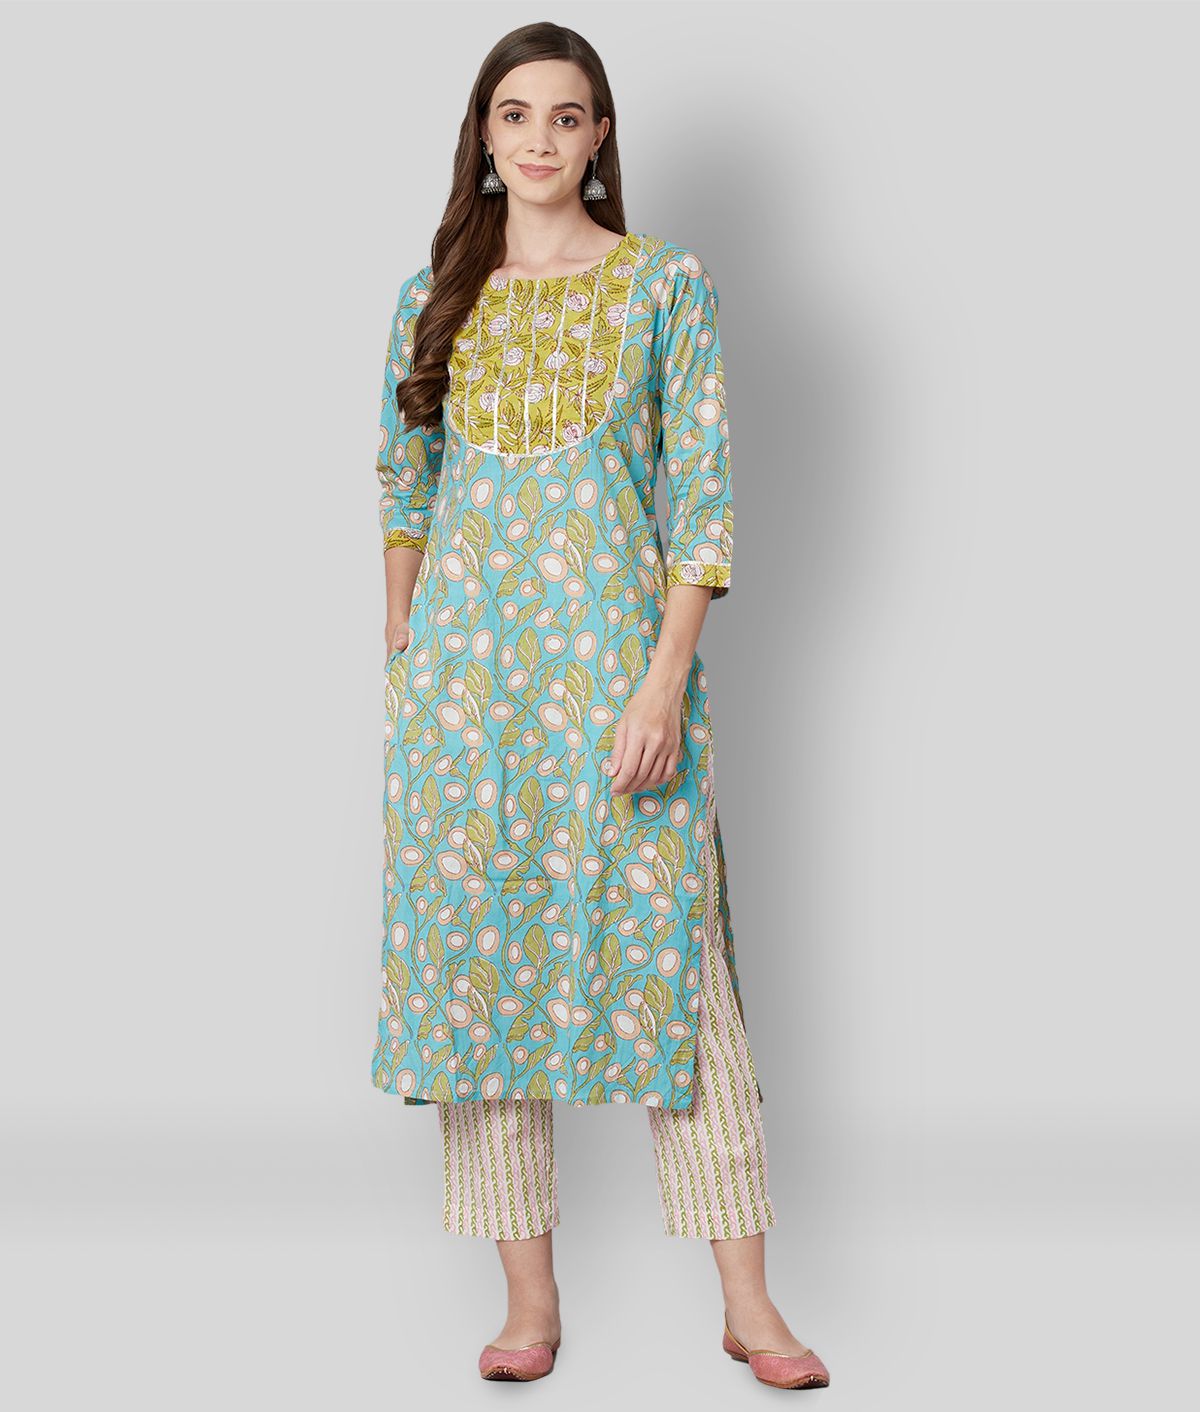     			Divena - Blue Cotton Women's Stitched Salwar Suit ( Pack of 1 )